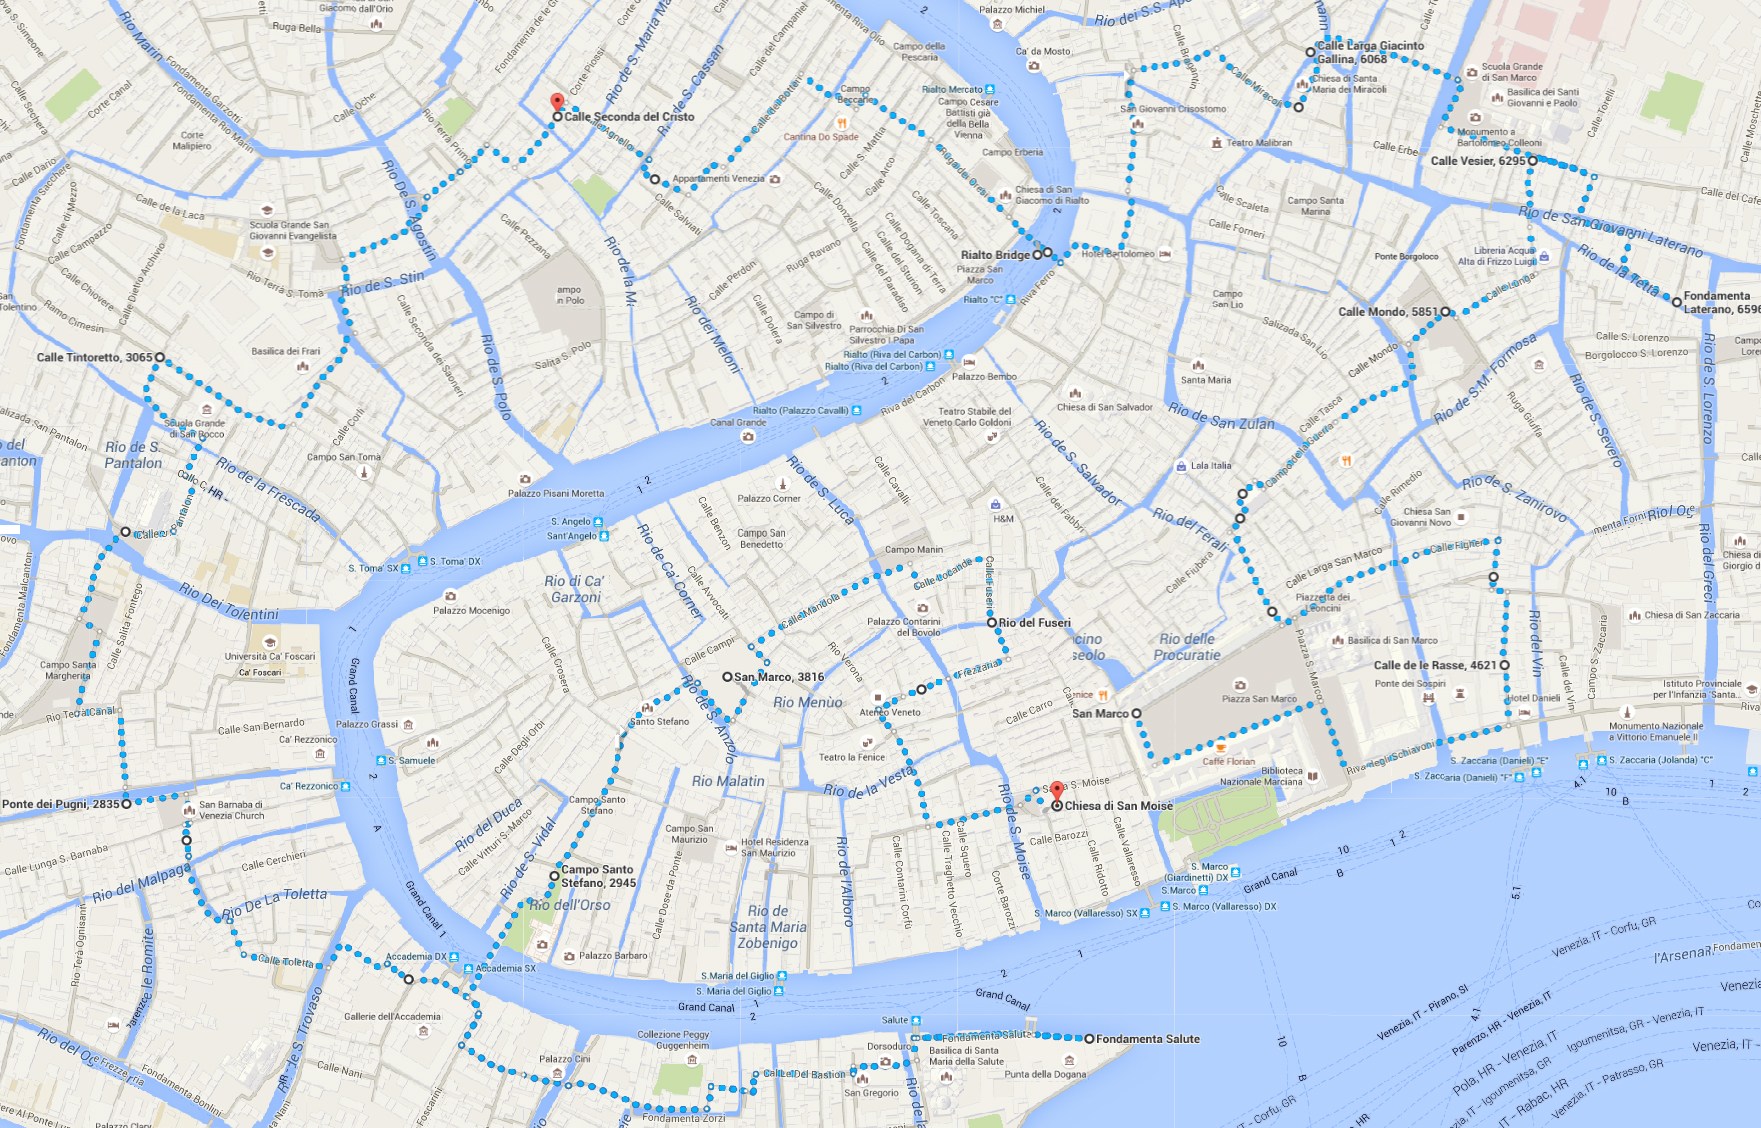 Venice Walking Tour Map Pdf